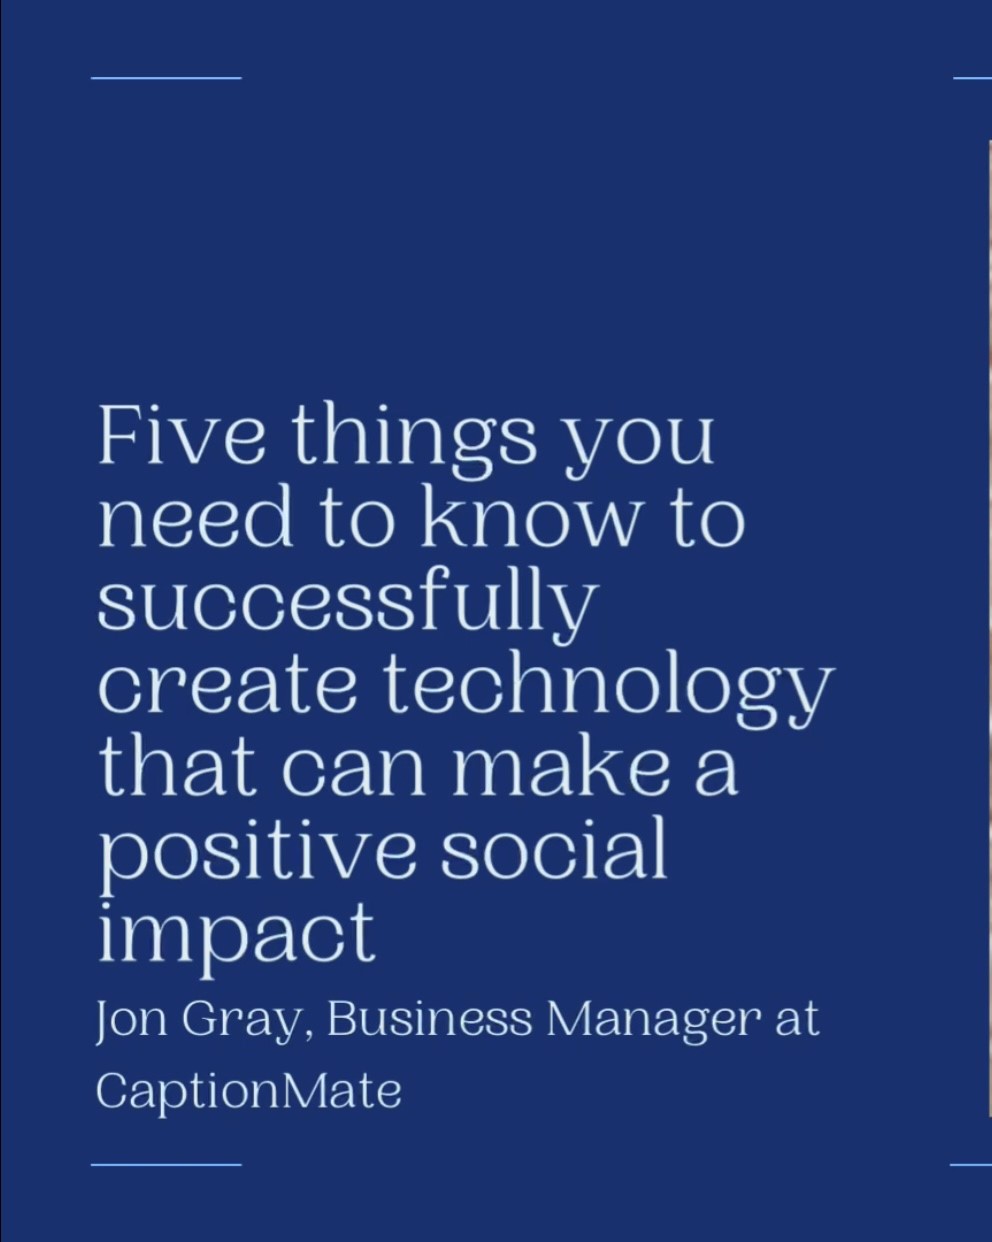 Fondo azul con texto "Cinco cosas que debes saber para crear tecnología con impacto social positivo" encima